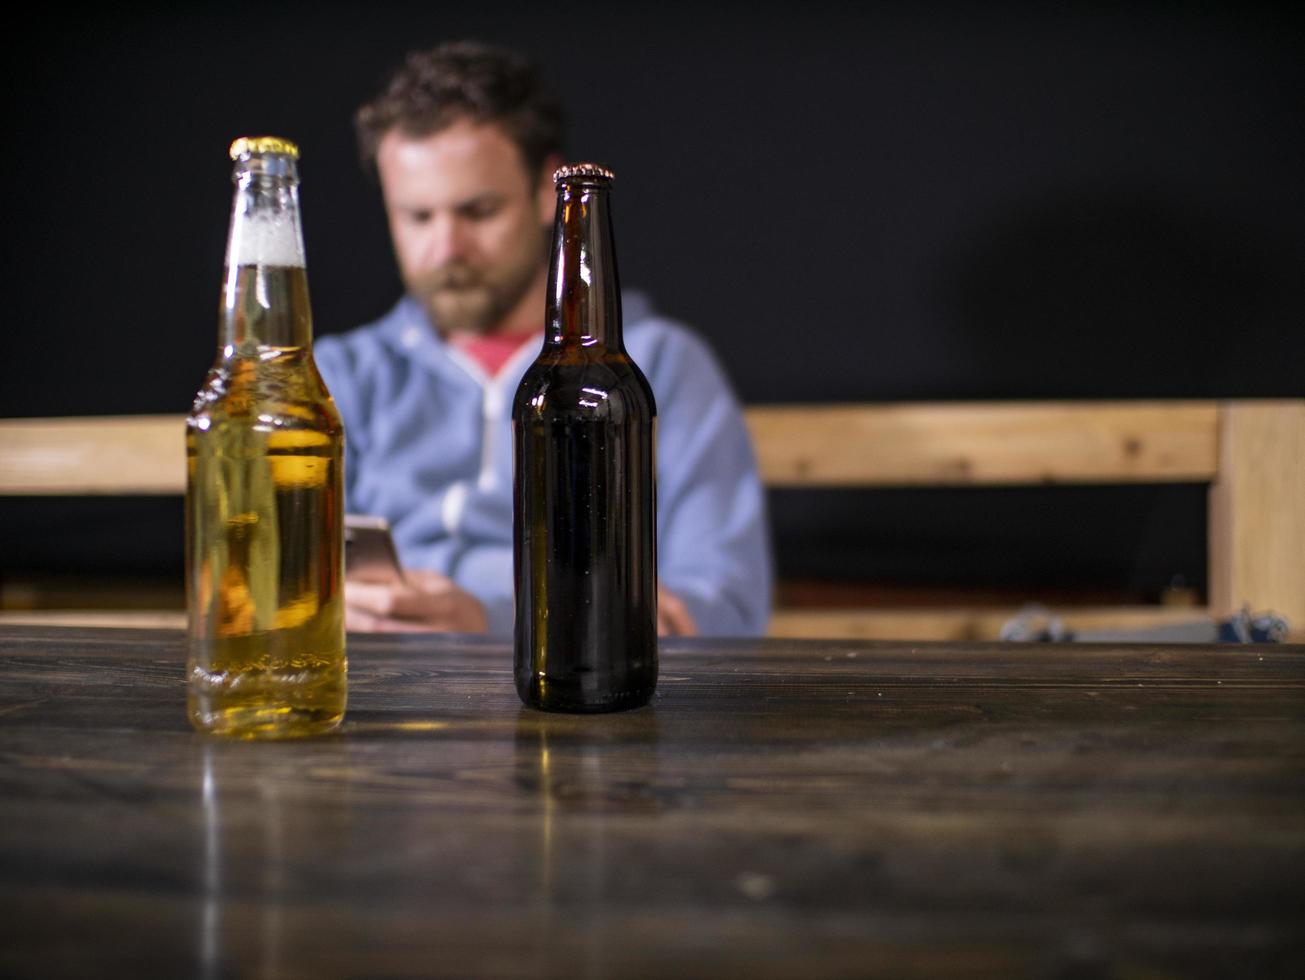 zwei Flaschen Bier stehen auf dem Tisch foto